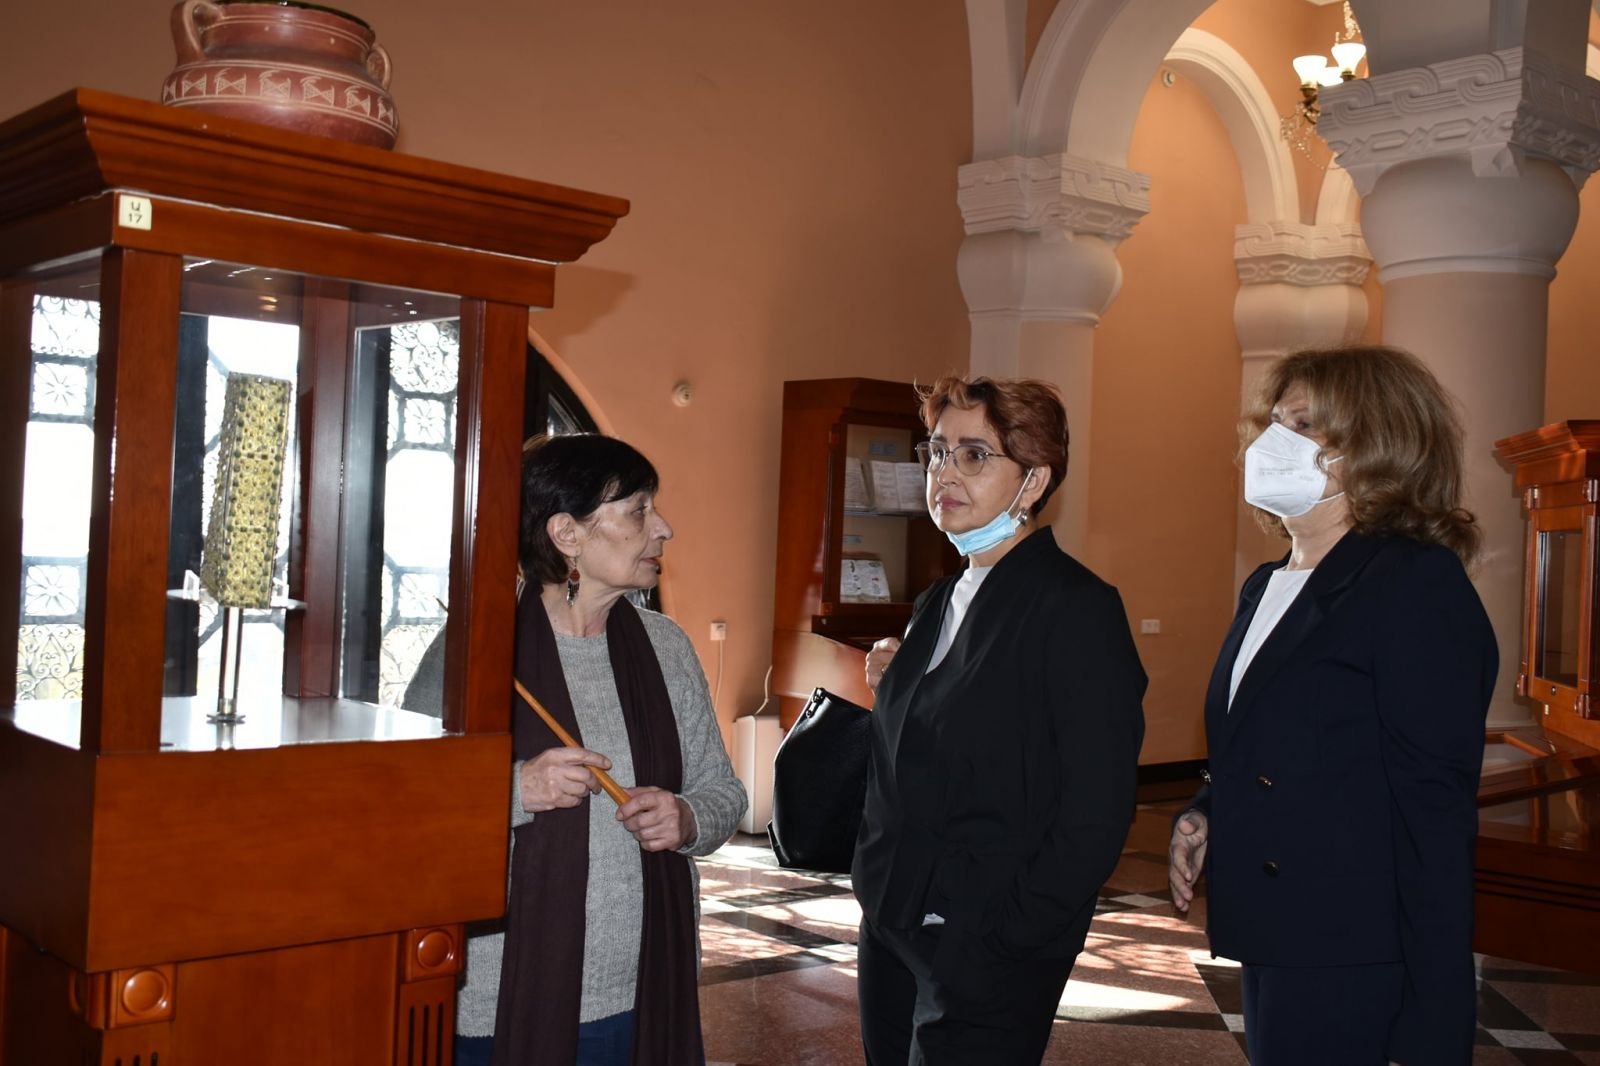 ՌԴ Գիտությունների ակադեմիայի աշխատակիցներն այցելել են Մատենադարան